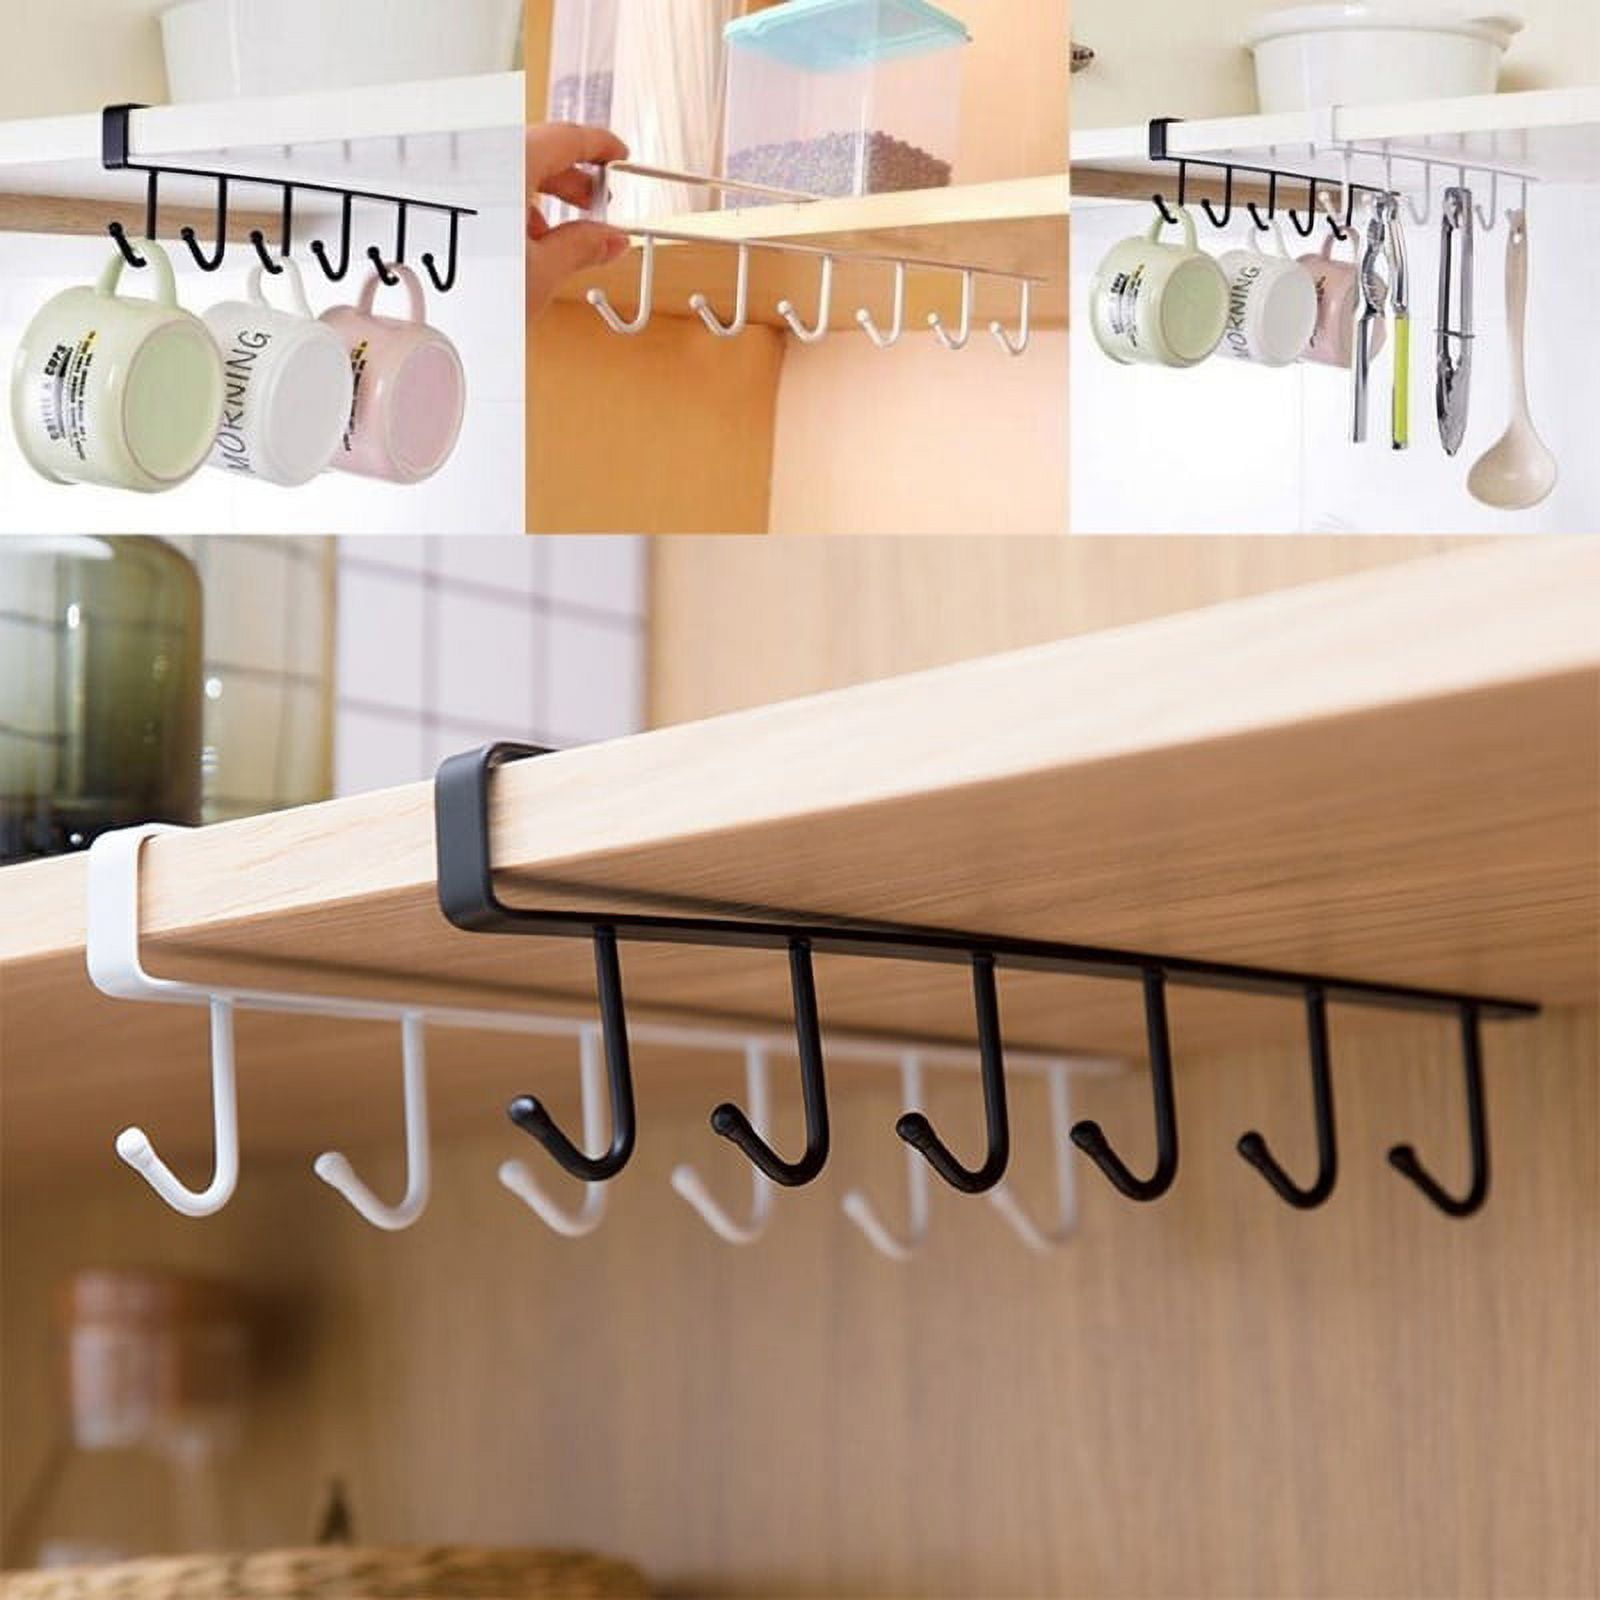 1pc Kitchen Shelf Storage Clothes Hanging Organizer Cup Holder